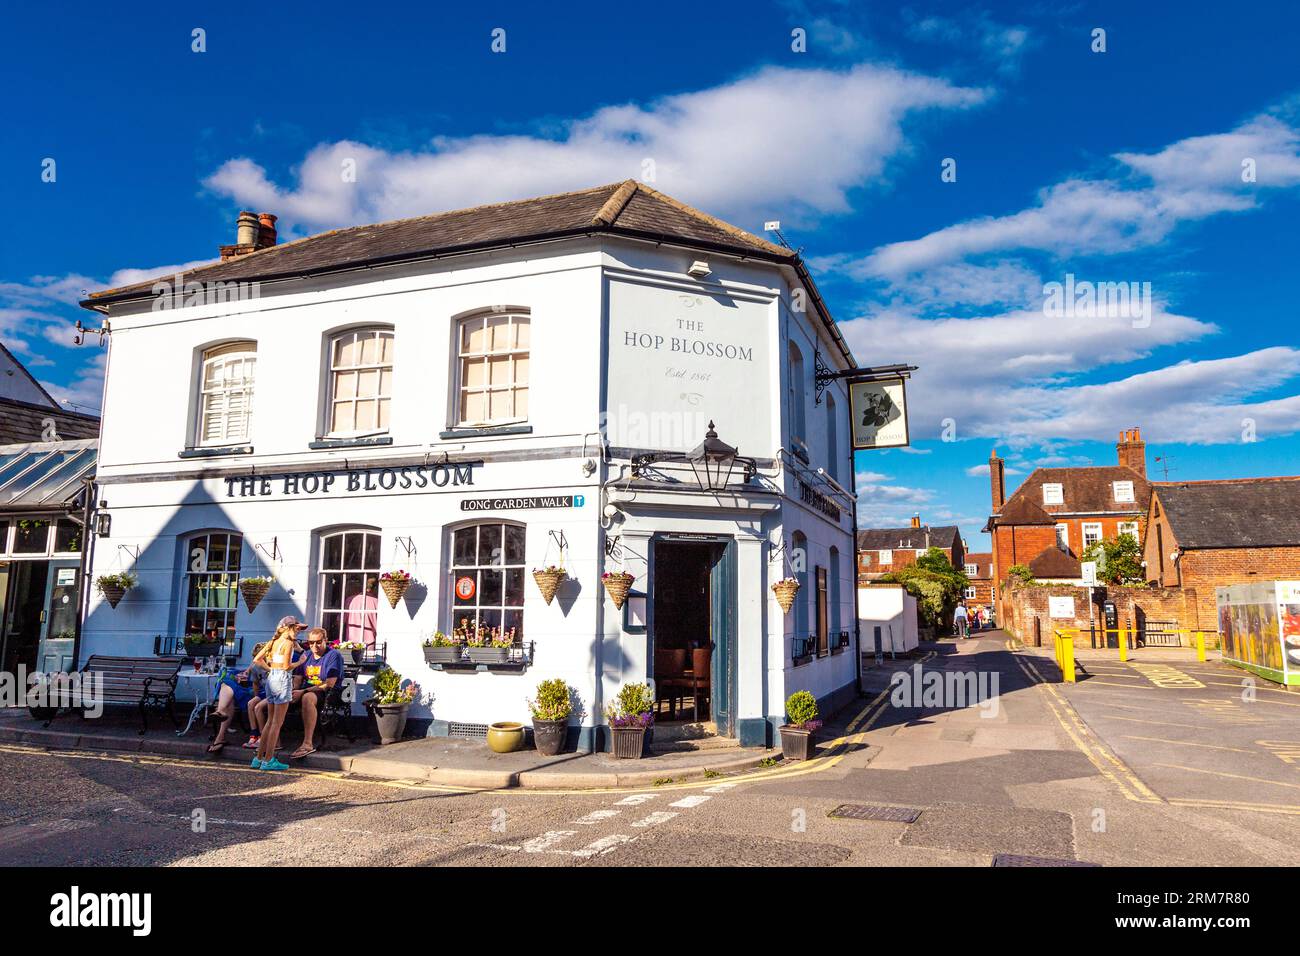 Exterior of the Hop Blossom pub in Farnham, Surrey, England Stock Photo